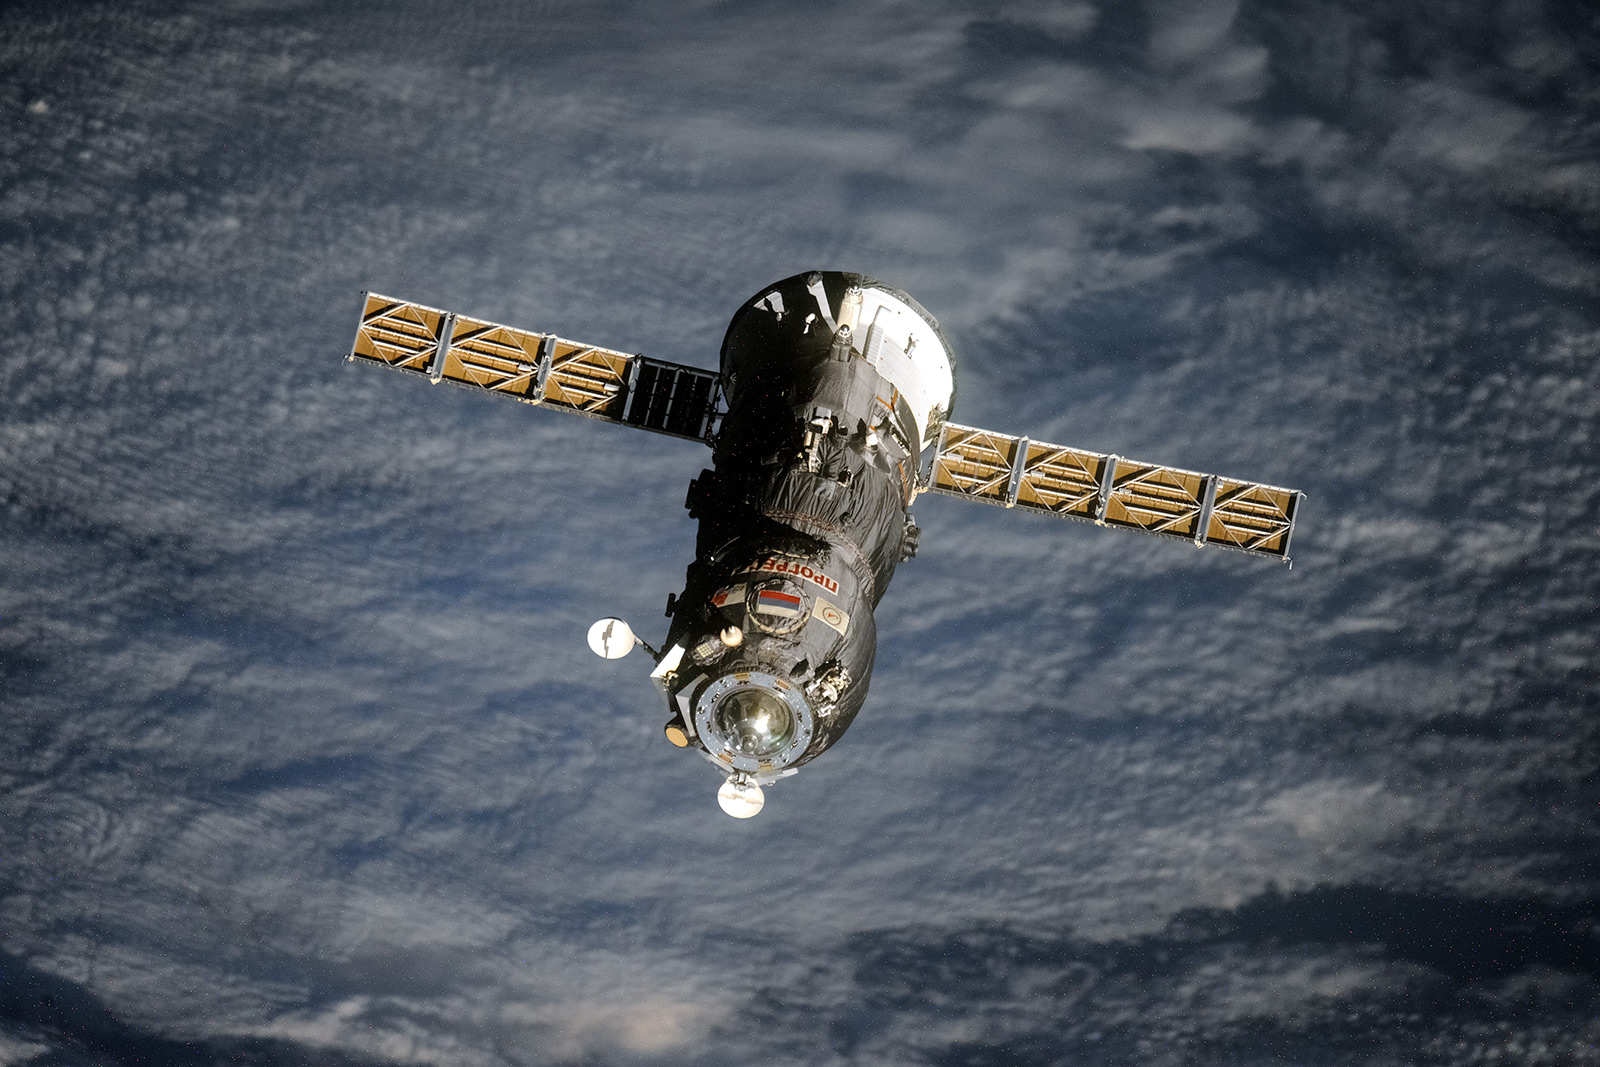 Progress M-23M lors de son départ de l'ISS le 21.07.2014 (Crédits : Oleg Artemyev/Roscosmos)